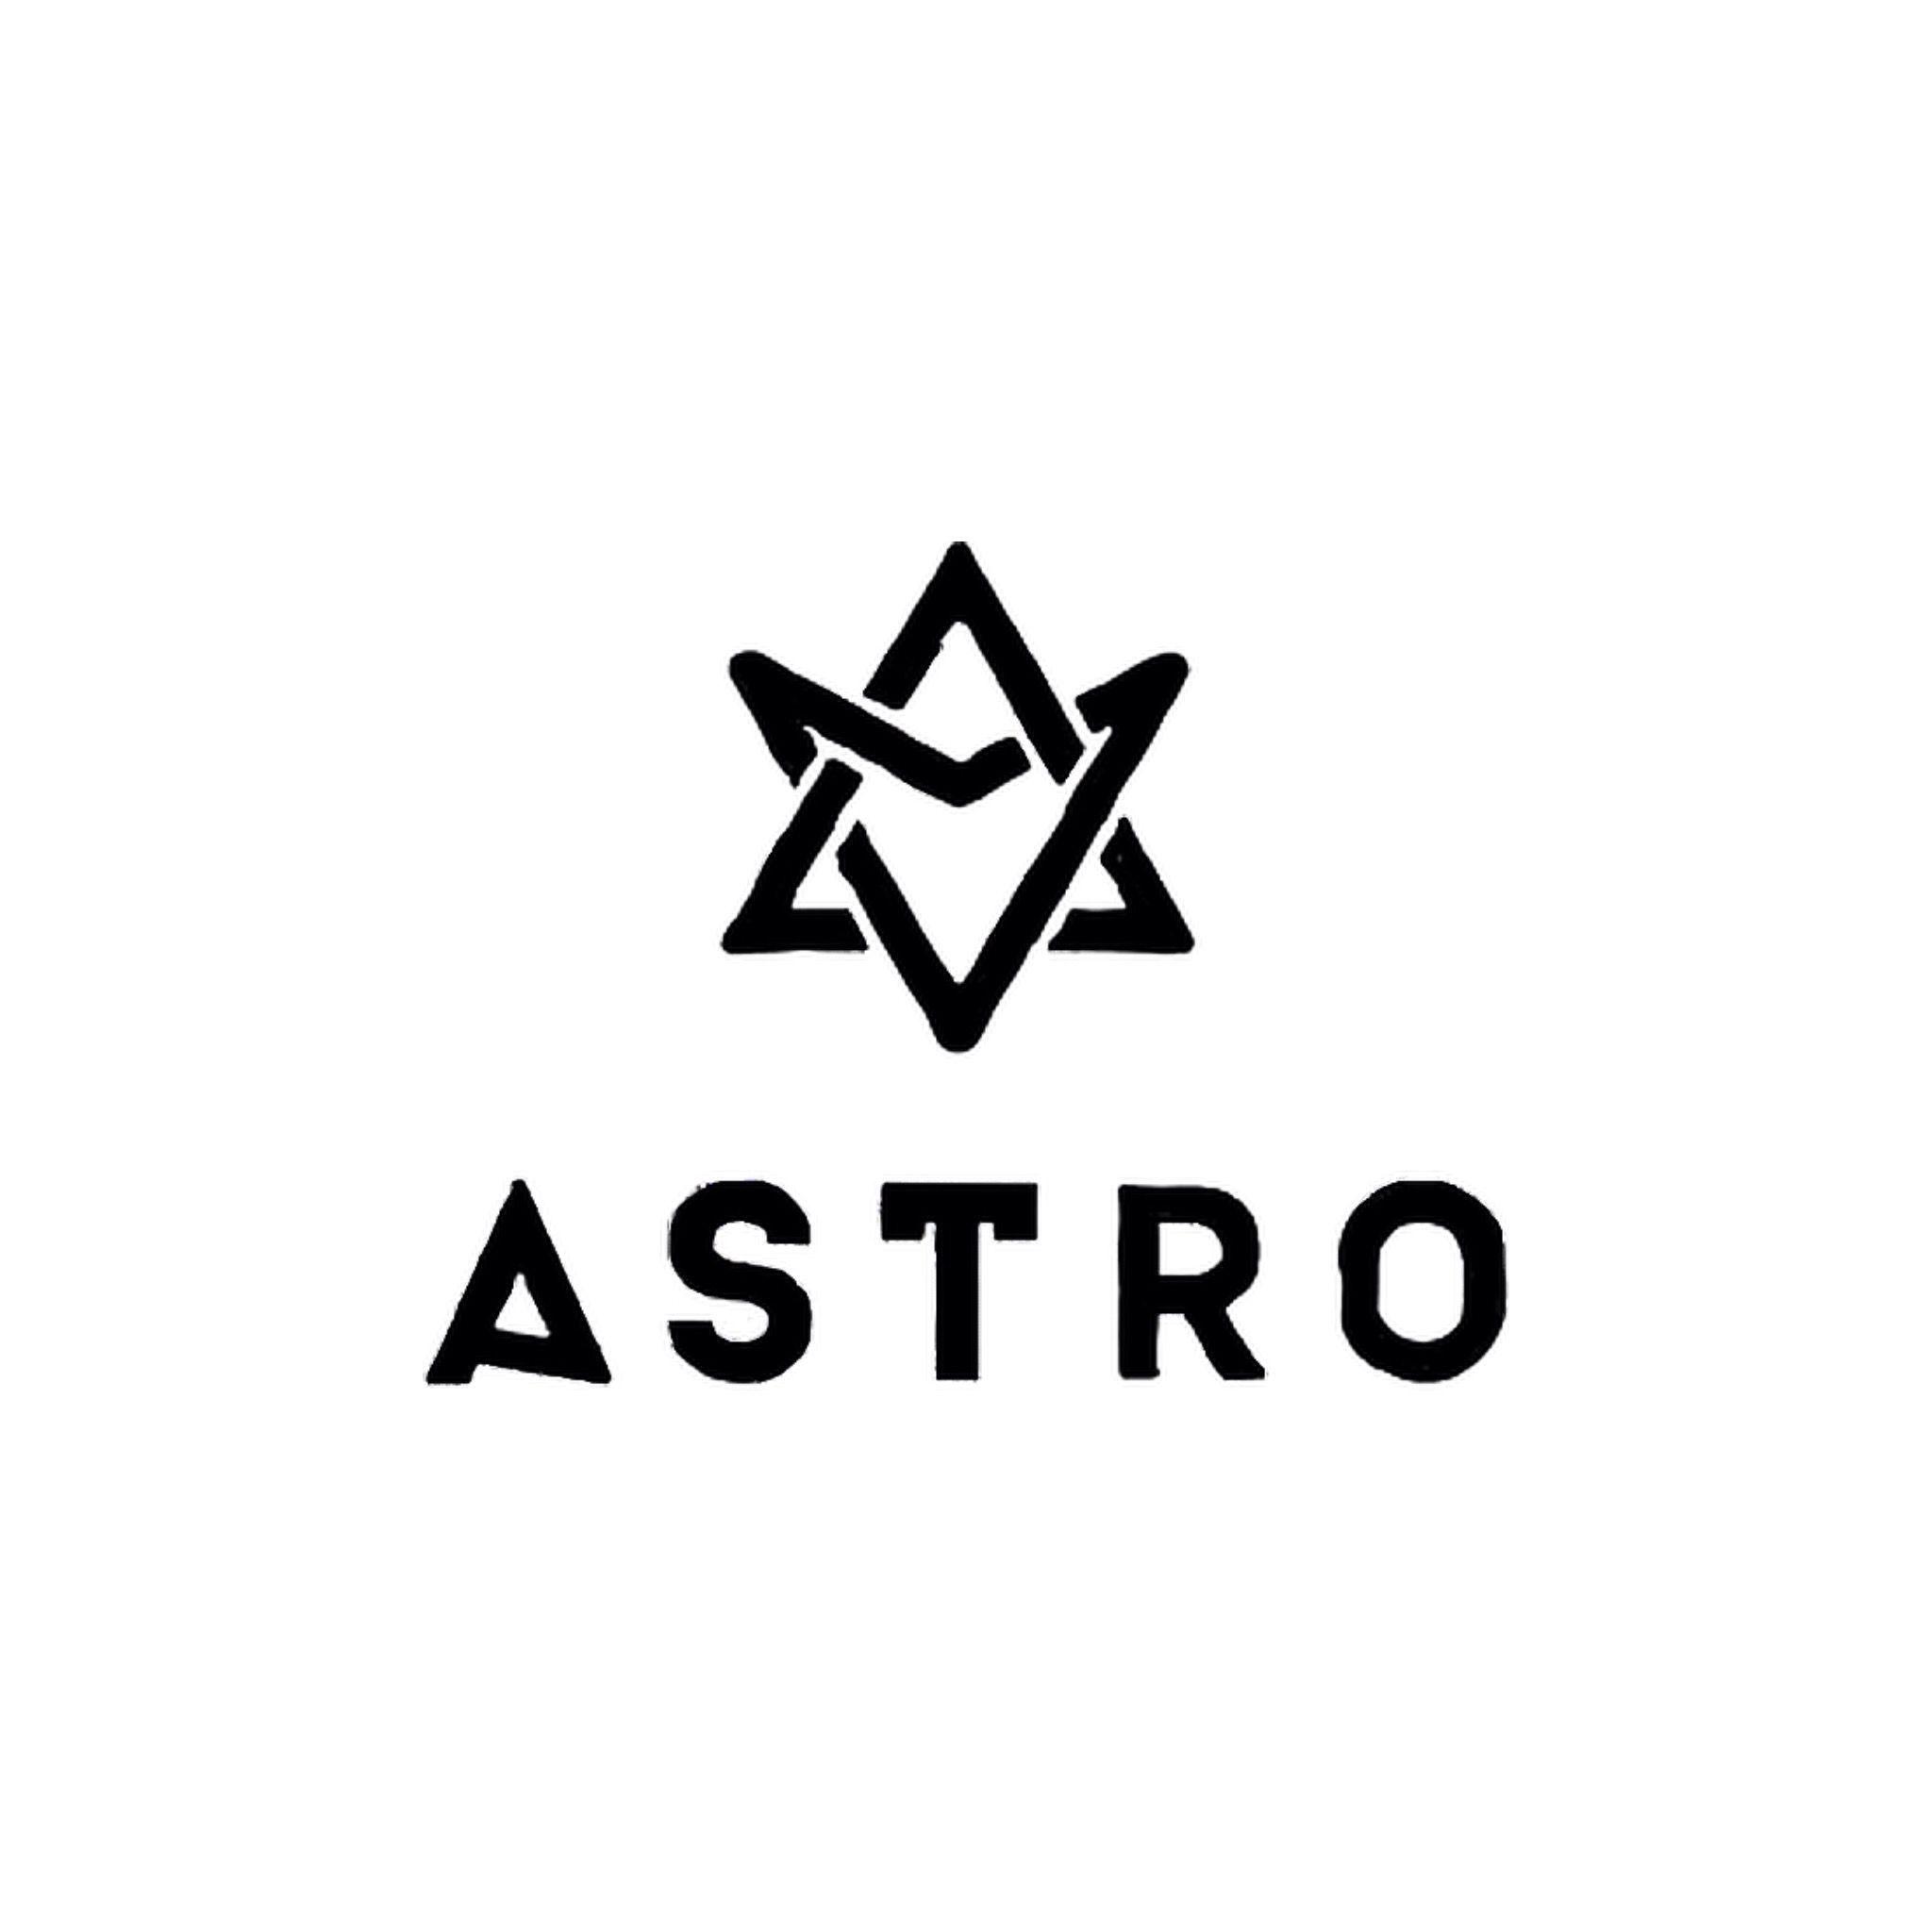 Astro Kpop Logo - ASTRO. 아스트로. Kpop, Logos